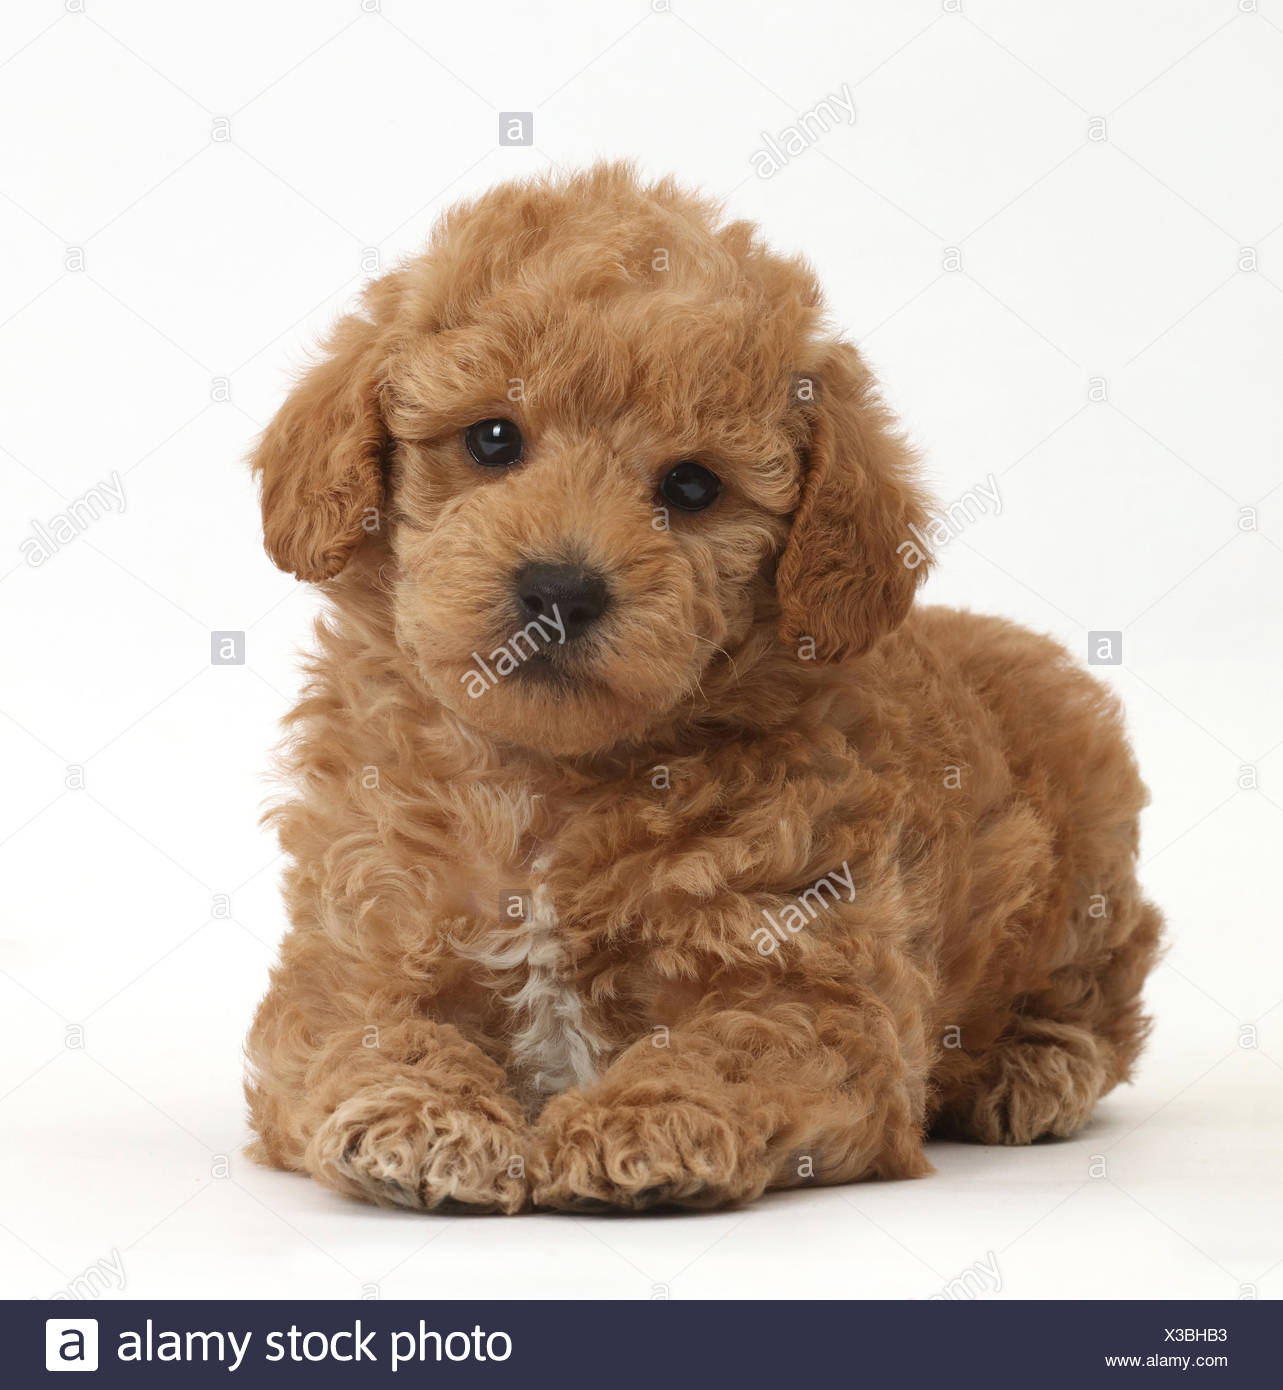 golden retriever toy poodle